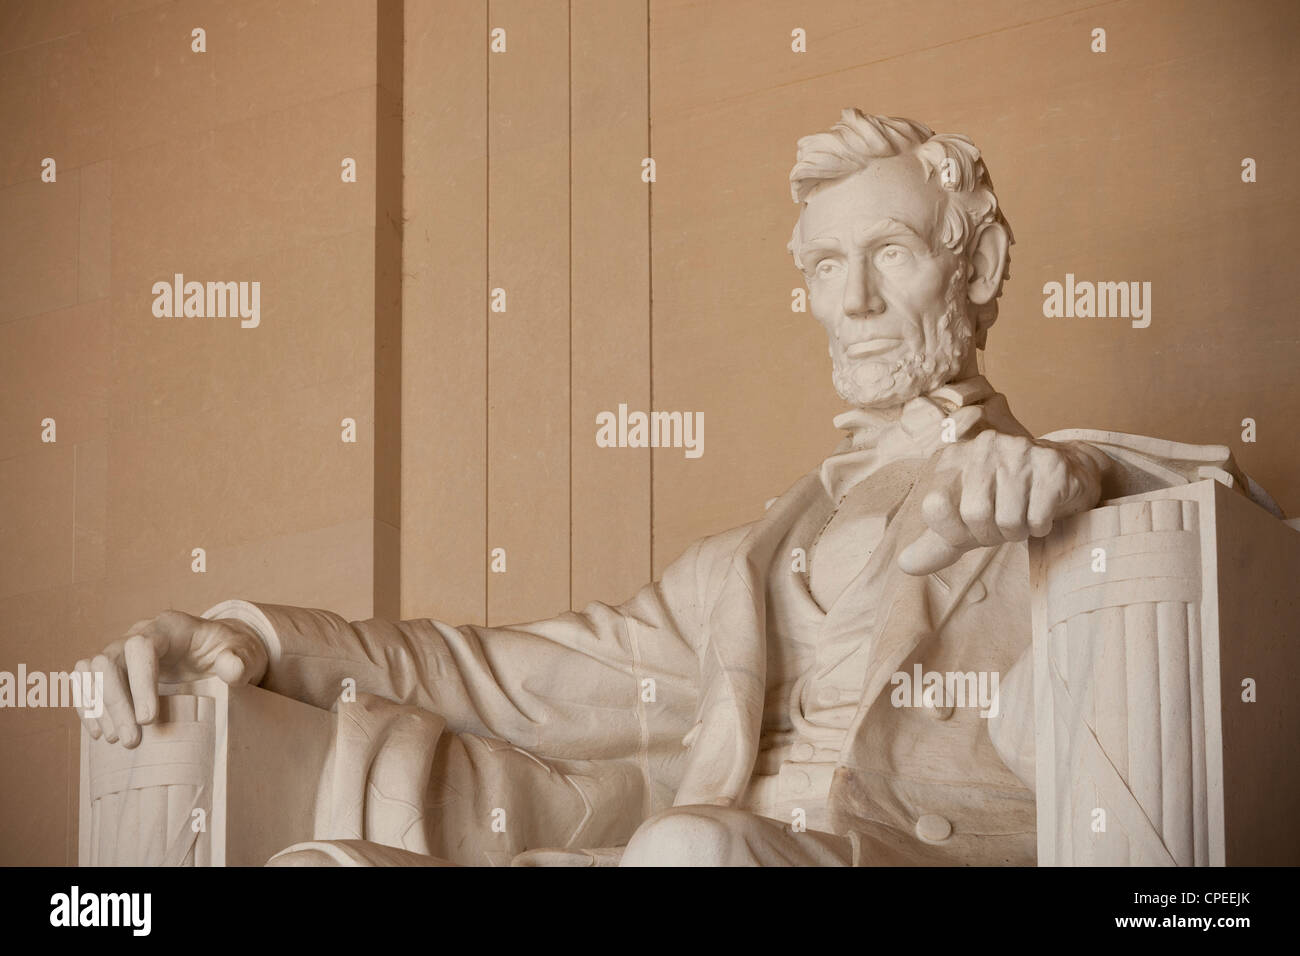 Sculpture de Lincoln. Lincoln Memorial, Washington, D.C. Banque D'Images